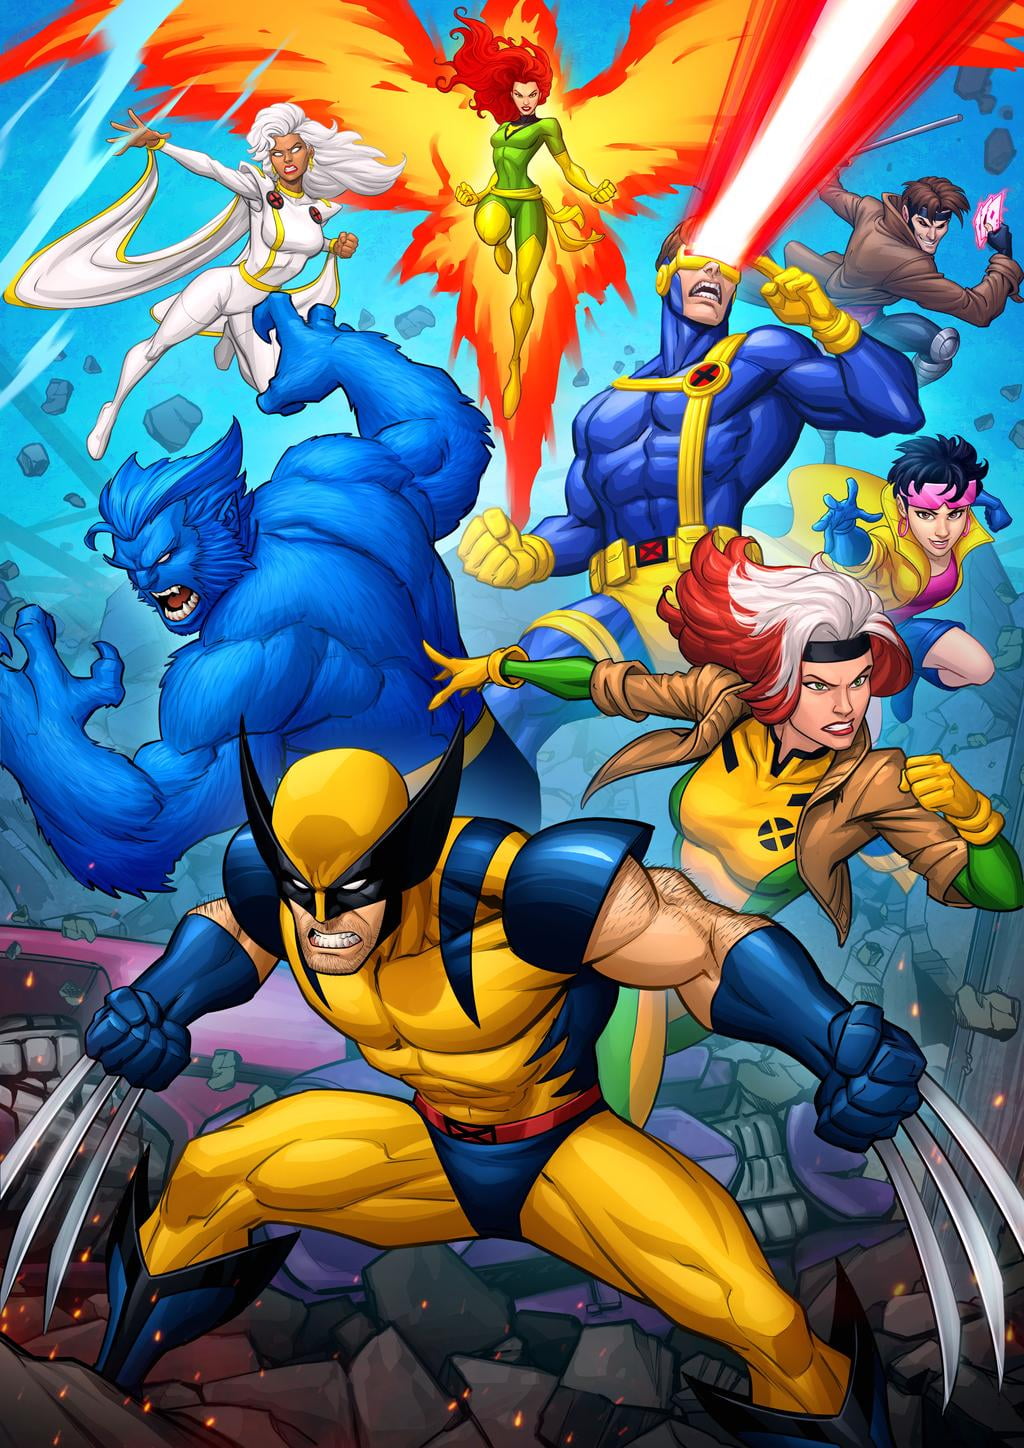 Patrick Brown, fan art, Wolverine, X-Men, Cyclops, Jean Grey